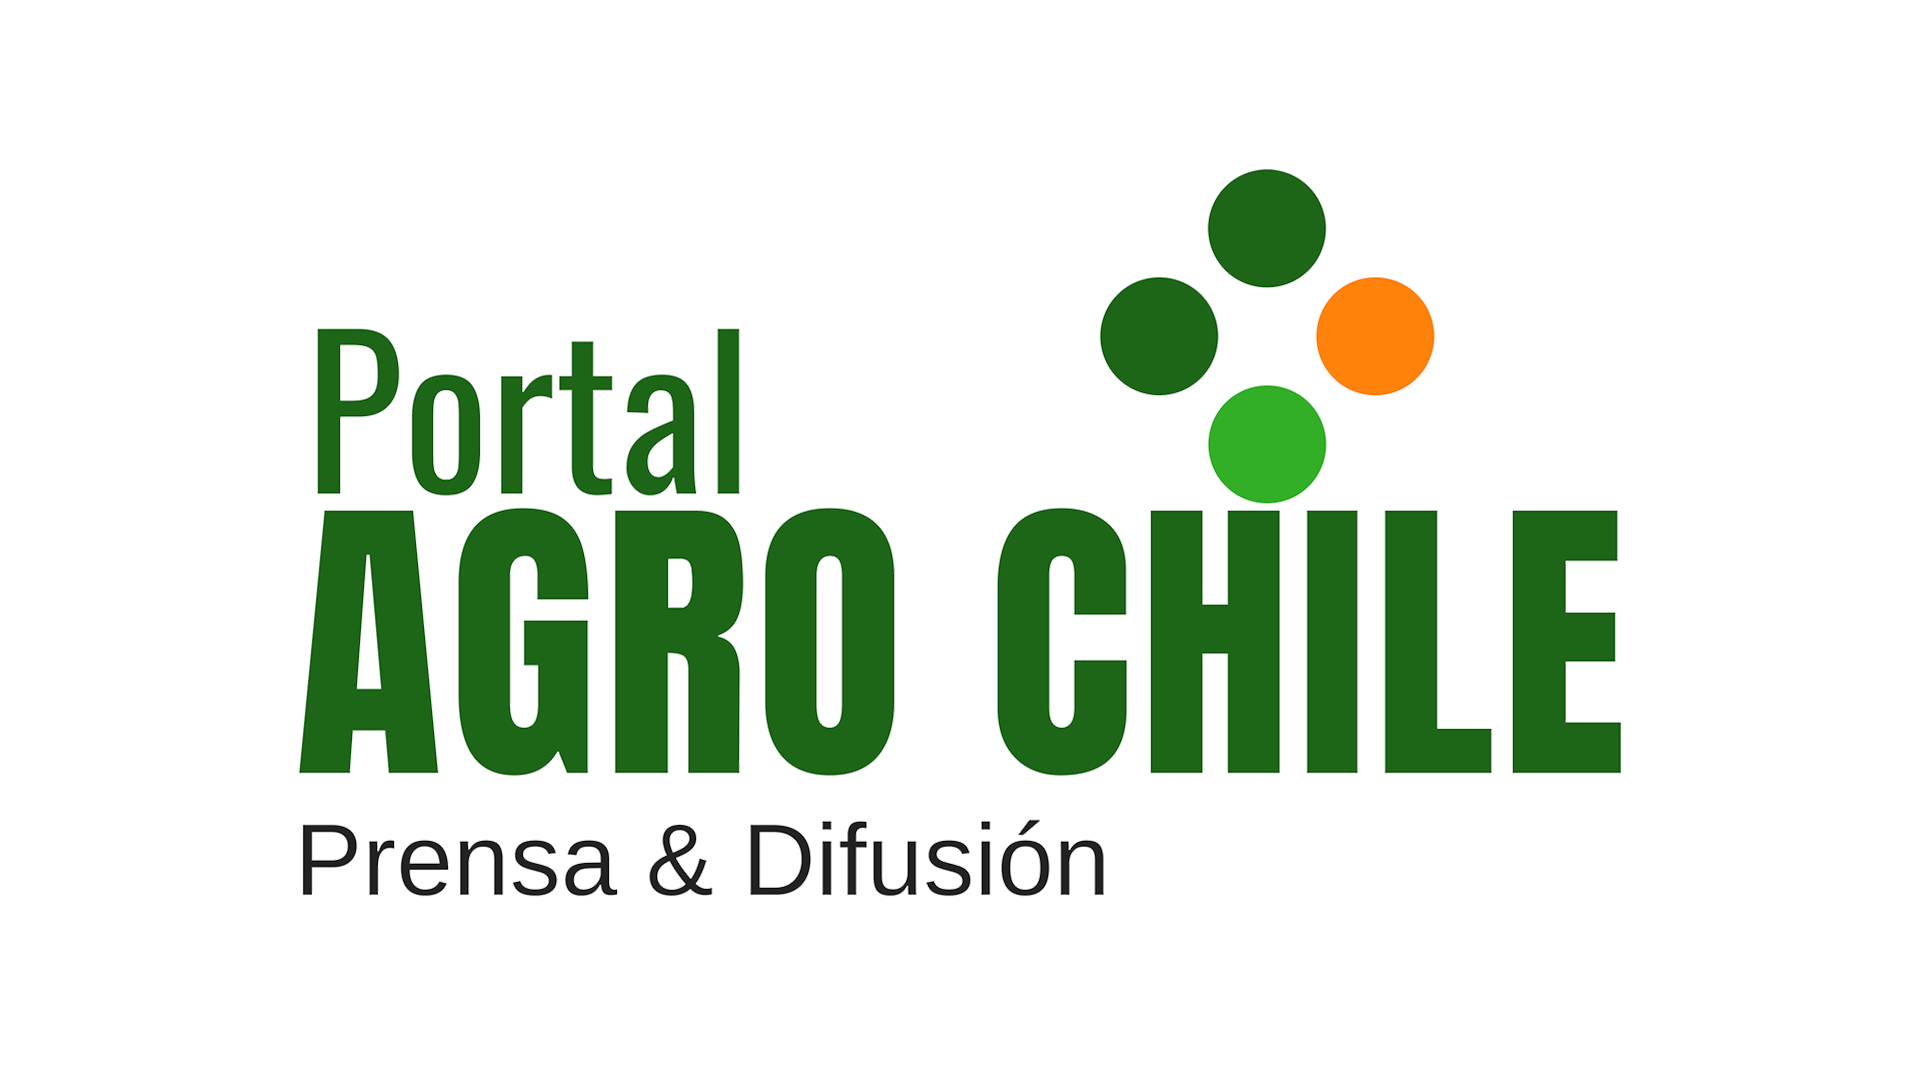 Portal Agro Chile